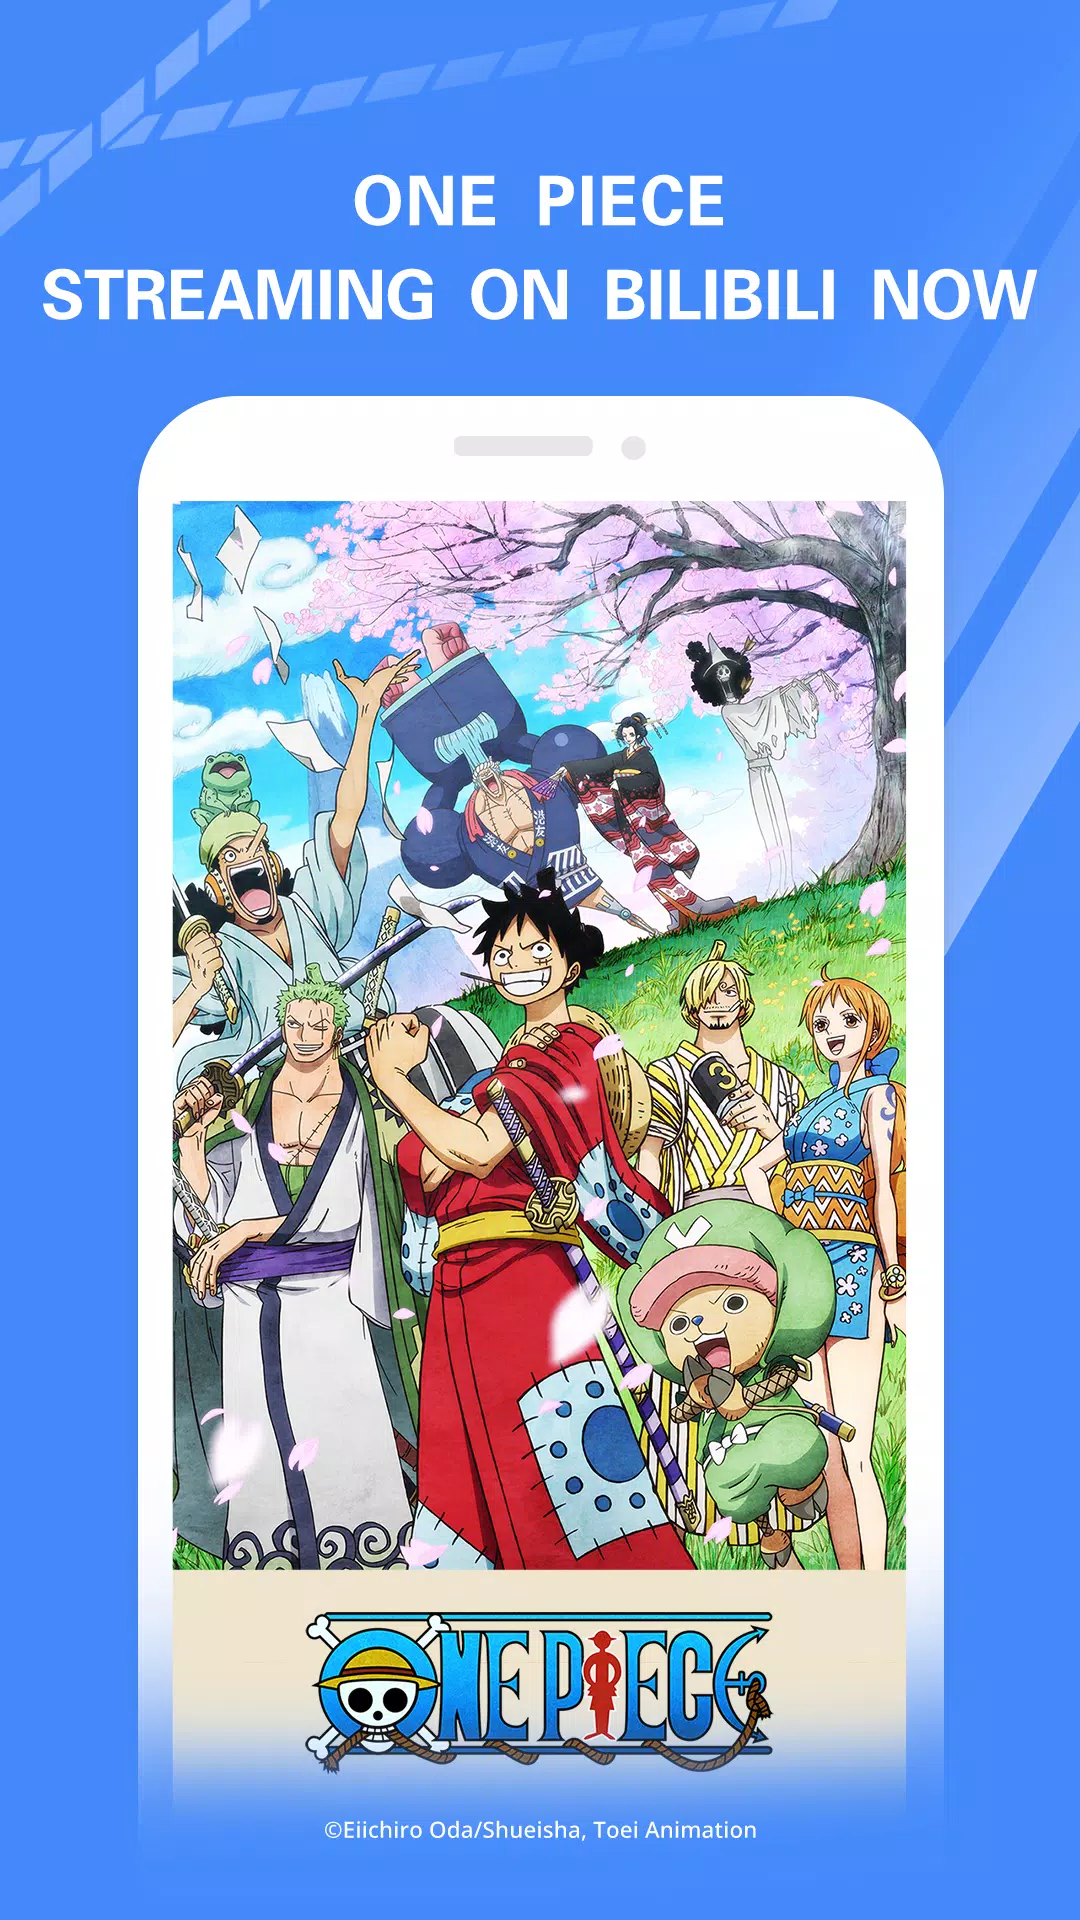 Animes Brasil - Full HD Animes APK (Android App) - Baixar Grátis